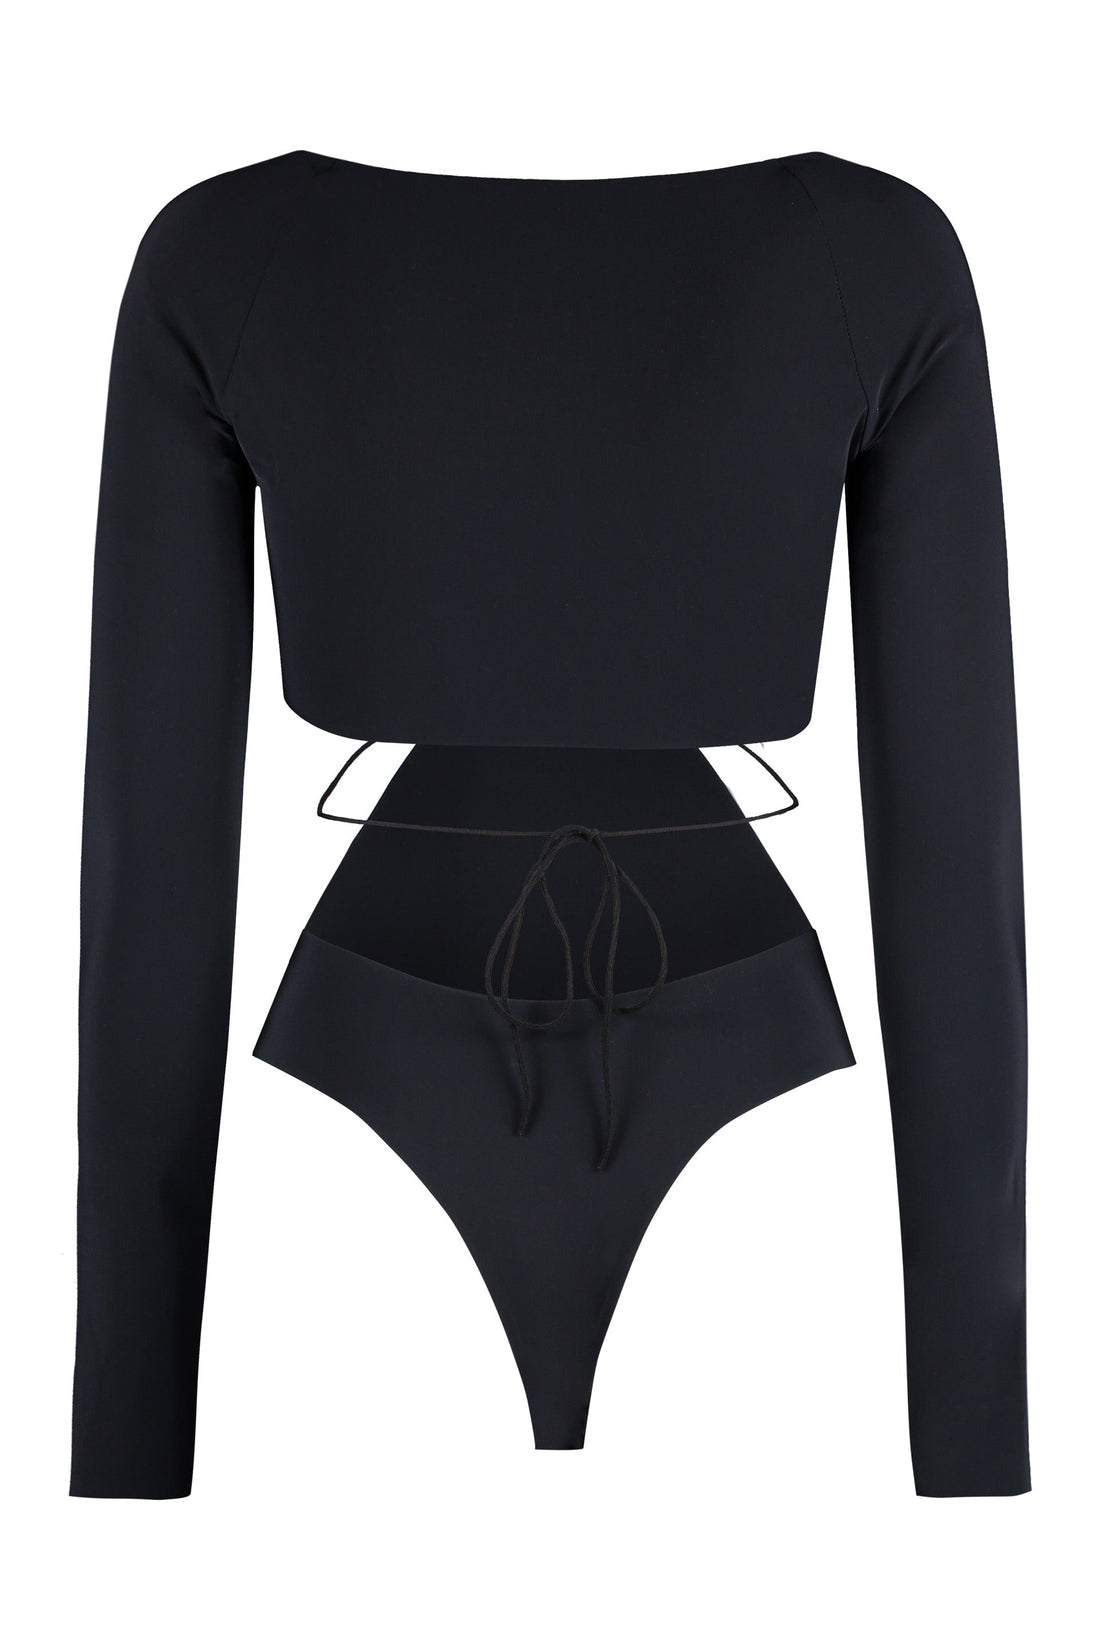 Amazuìn-OUTLET-SALE-Daphne long sleeve jersey bodysuit-ARCHIVIST